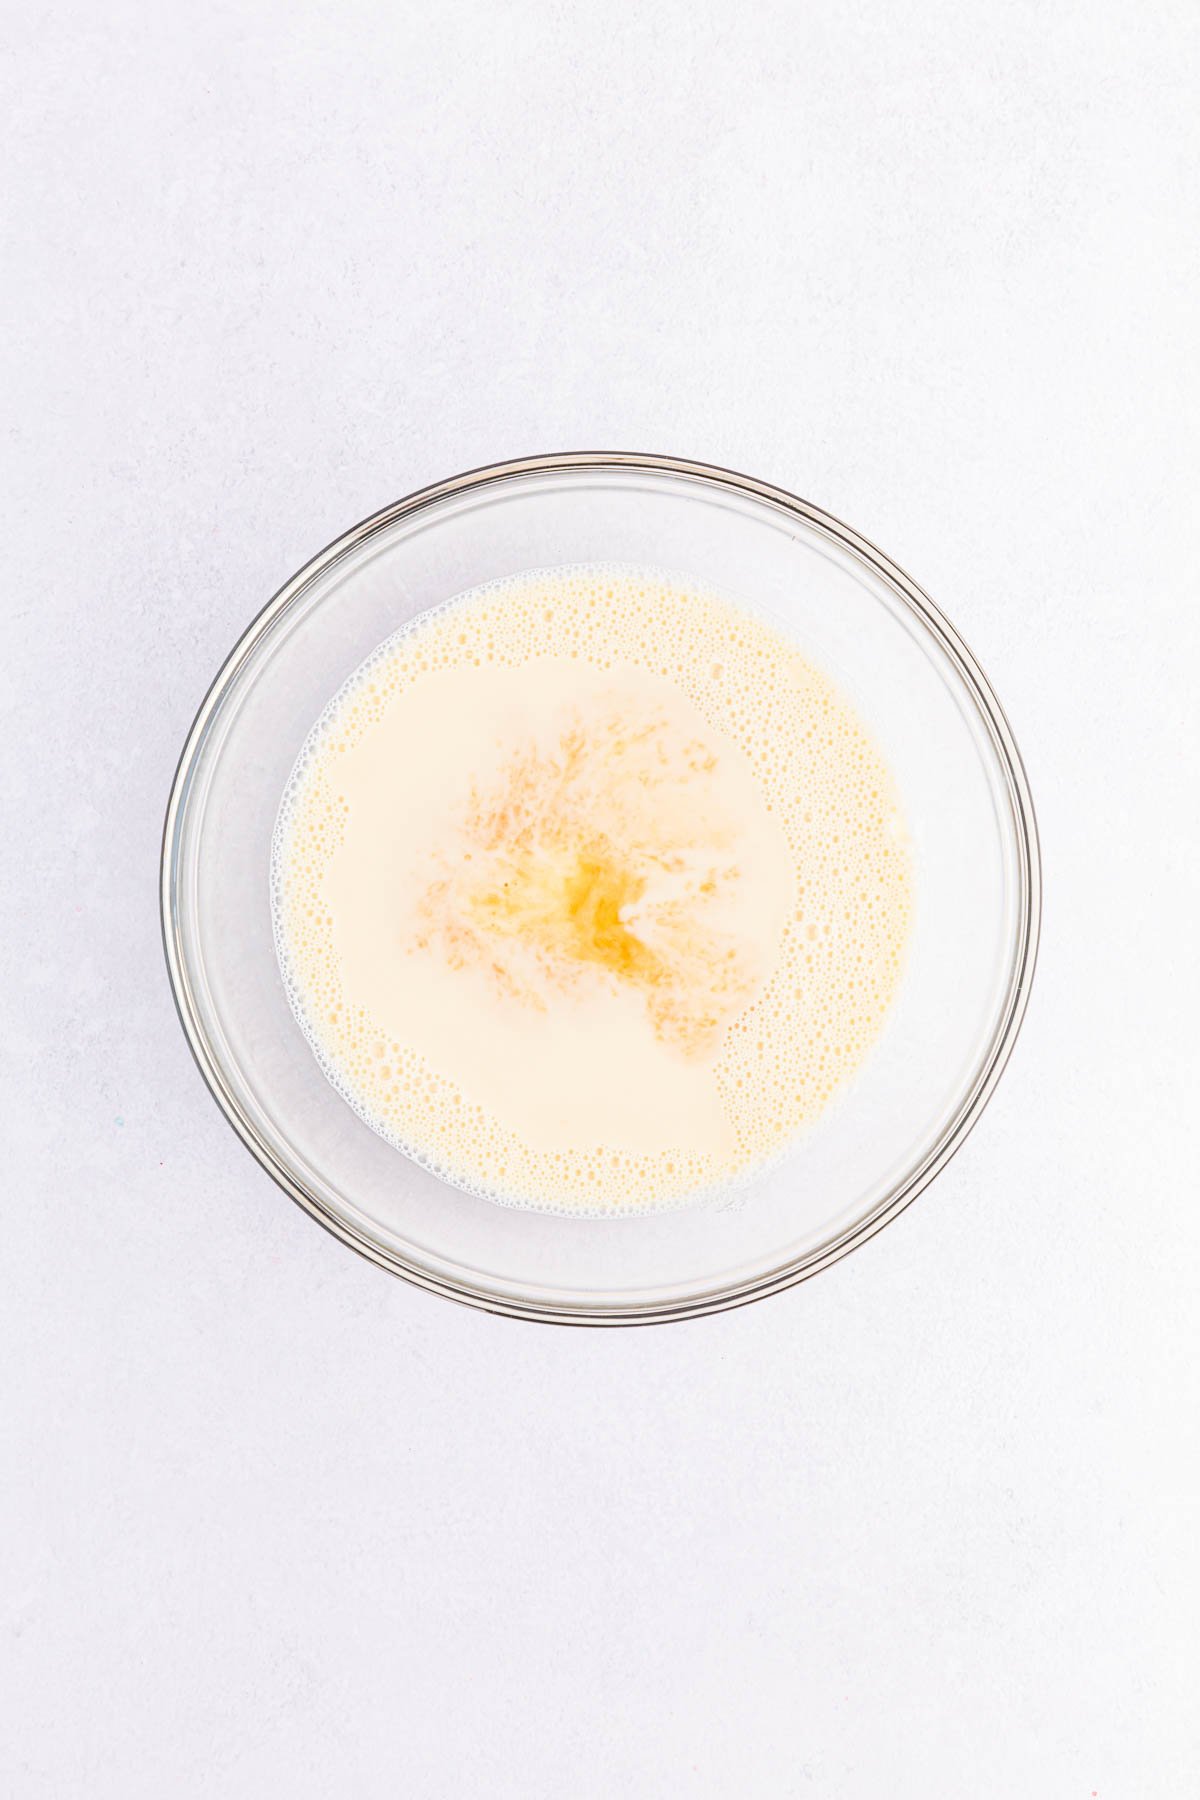 white creamy jello mixture in a glass bowl